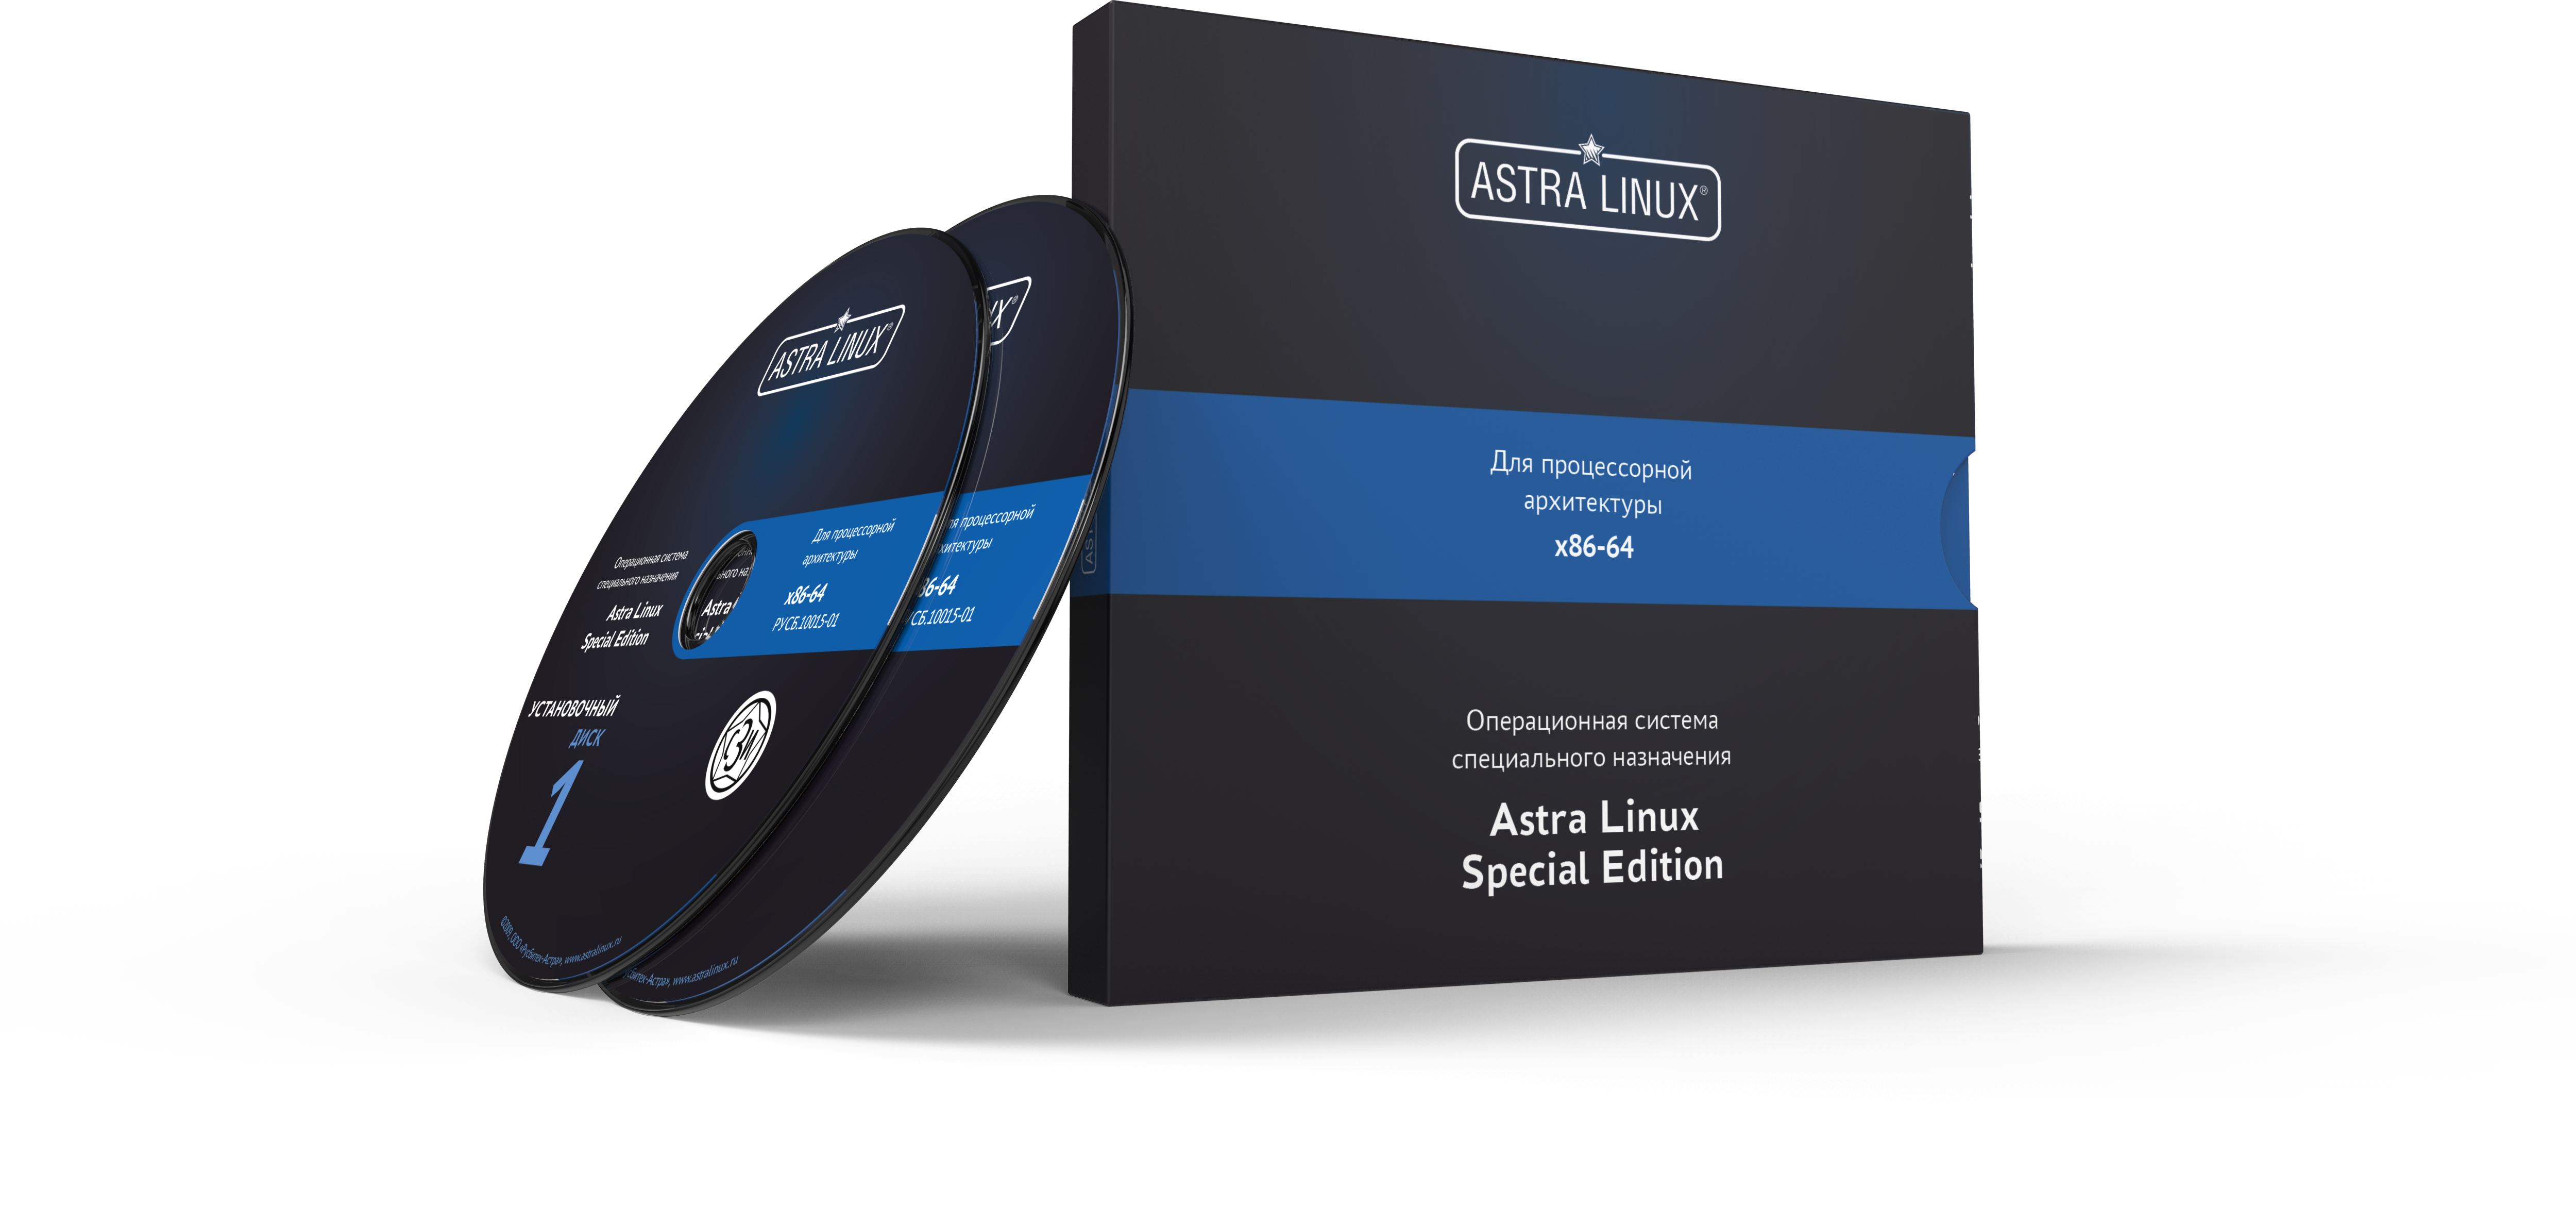 Astra Linux Special Edition 1.7 - Смоленск, "Максимальный", BOX, без огр. срока, ТП "Привилегированная" на 36 мес.